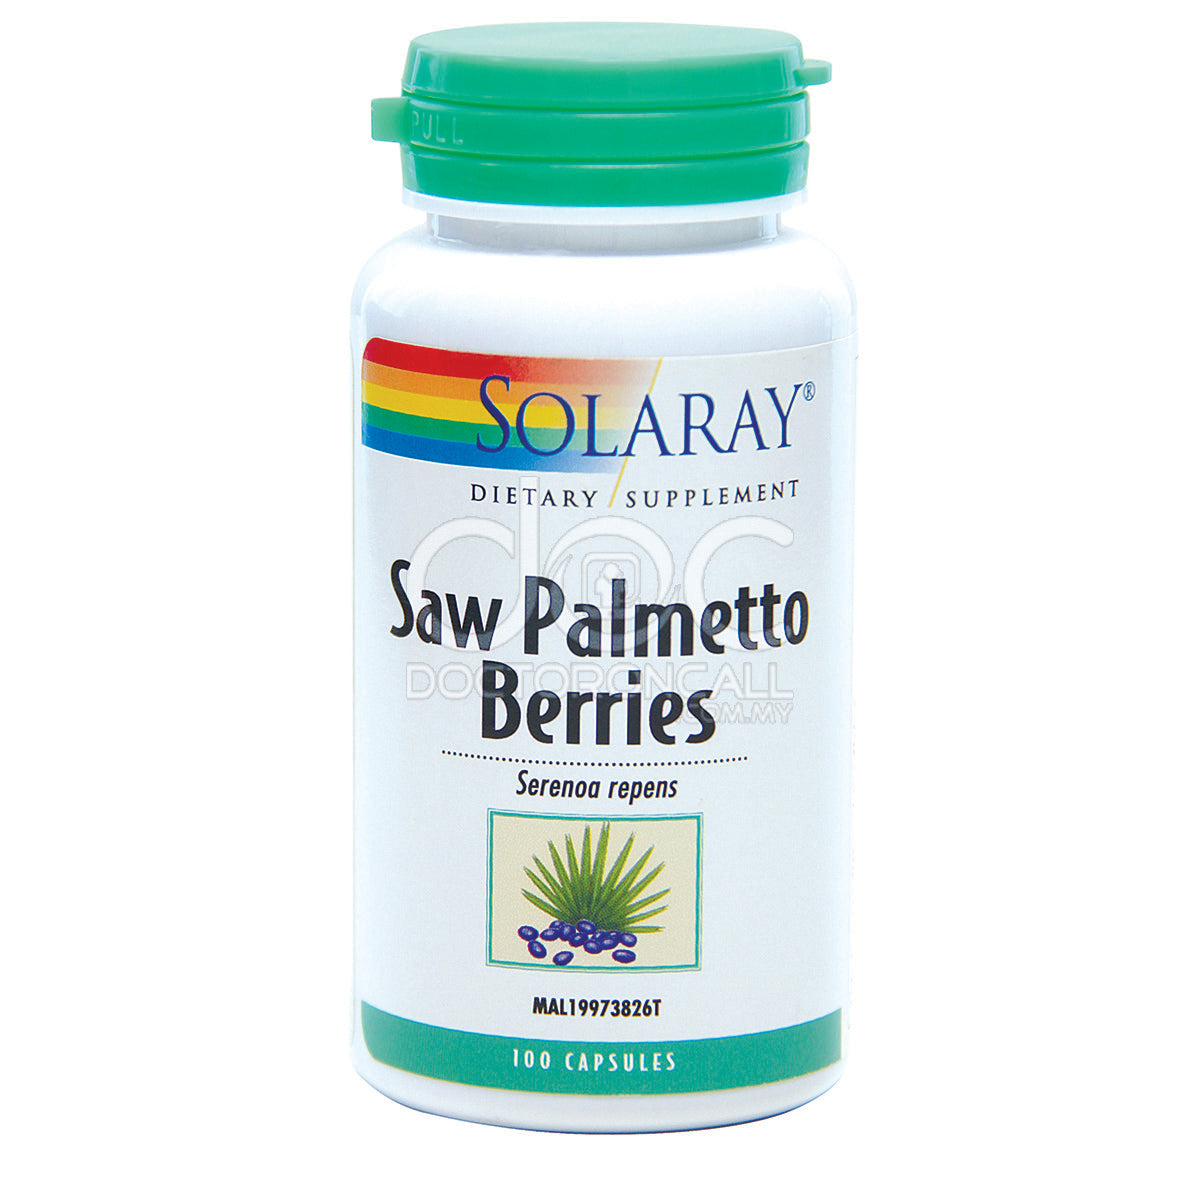 Solaray Saw Palmetto Berries Capsule 100s x2 - DoctorOnCall Online Pharmacy